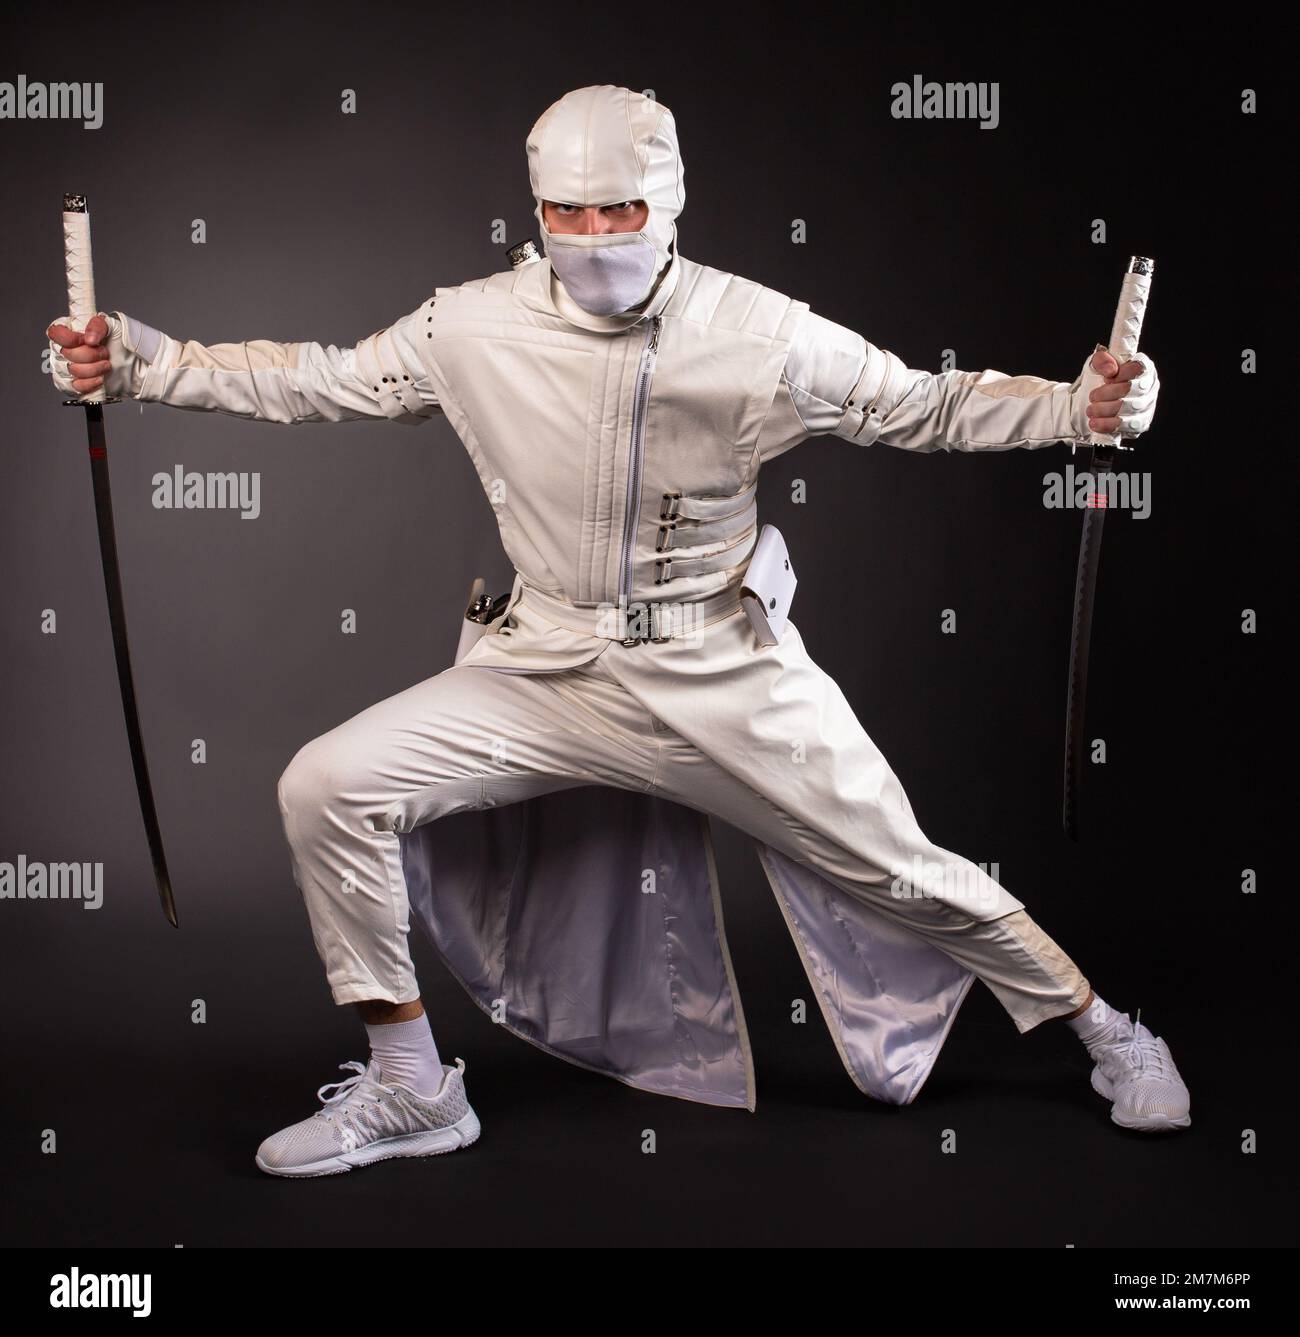 Un homme sous la forme d'un ninja de combat pose avec deux épées sur un fond noir Banque D'Images